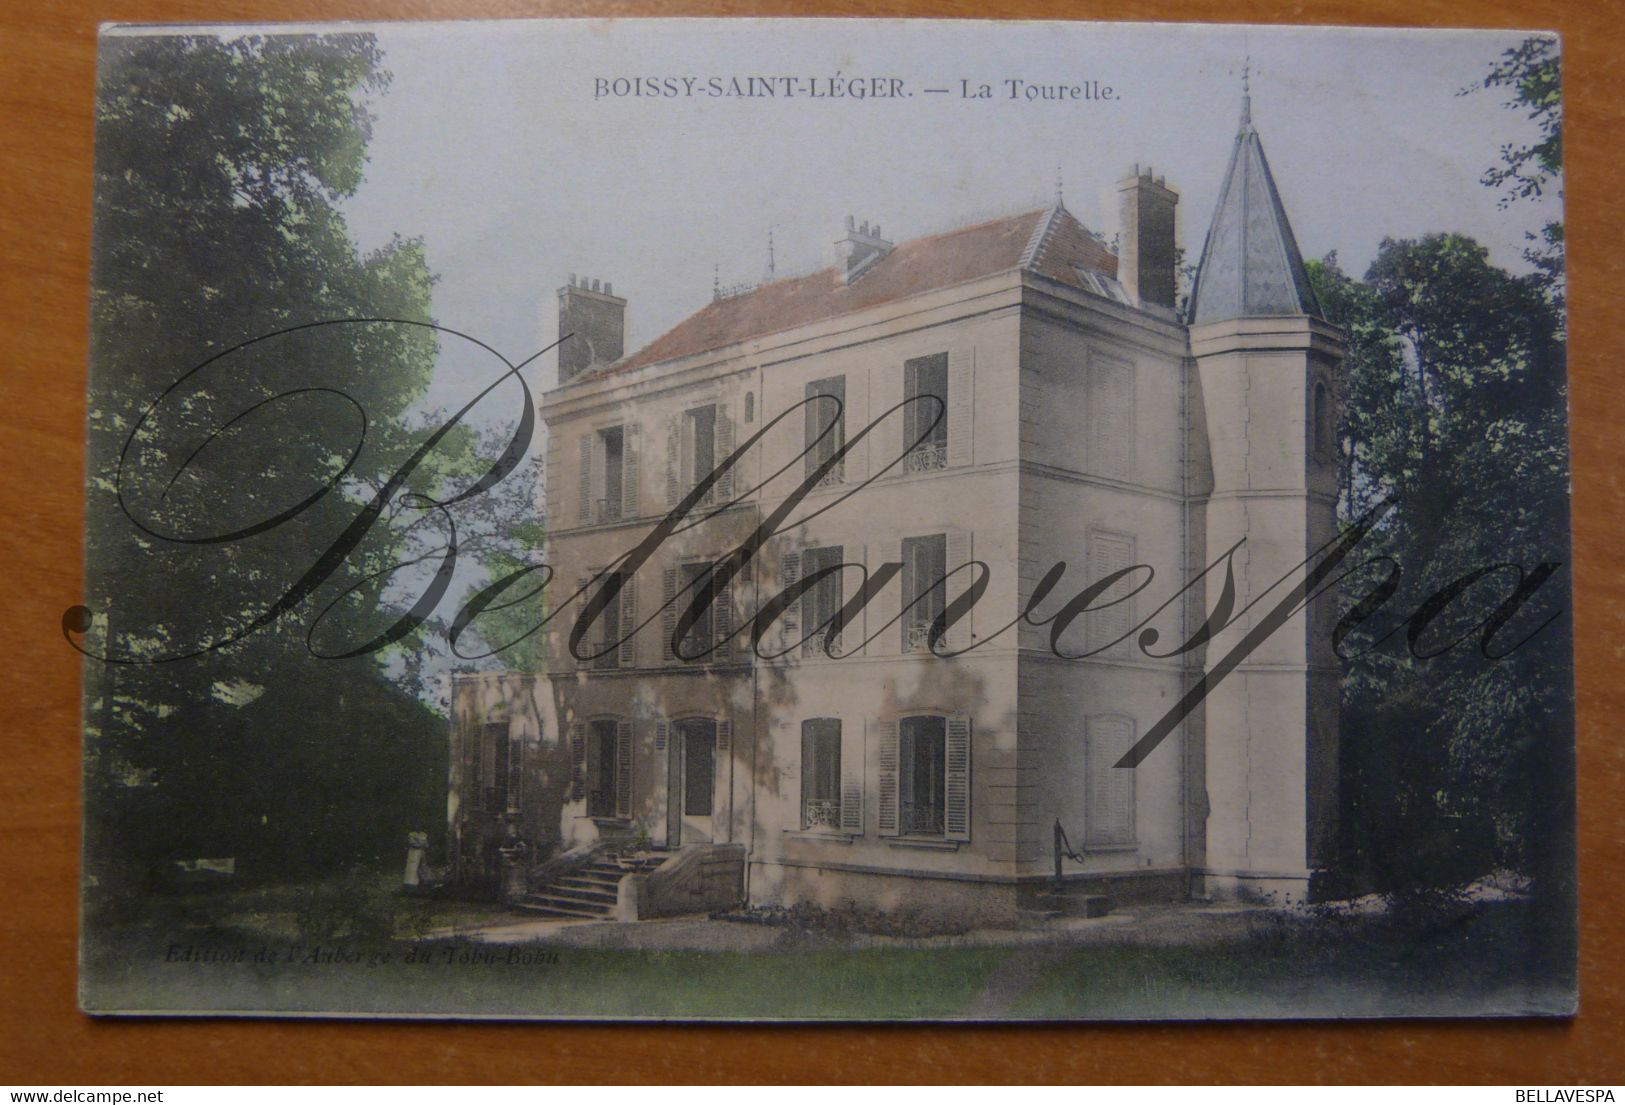 Boisy Saint Léger. La Tourelle. Villa Ou Petite Chateau Edition De L'Auberge Du Tobu-Bobu D94 Val De Marne. - Boissy Saint Leger